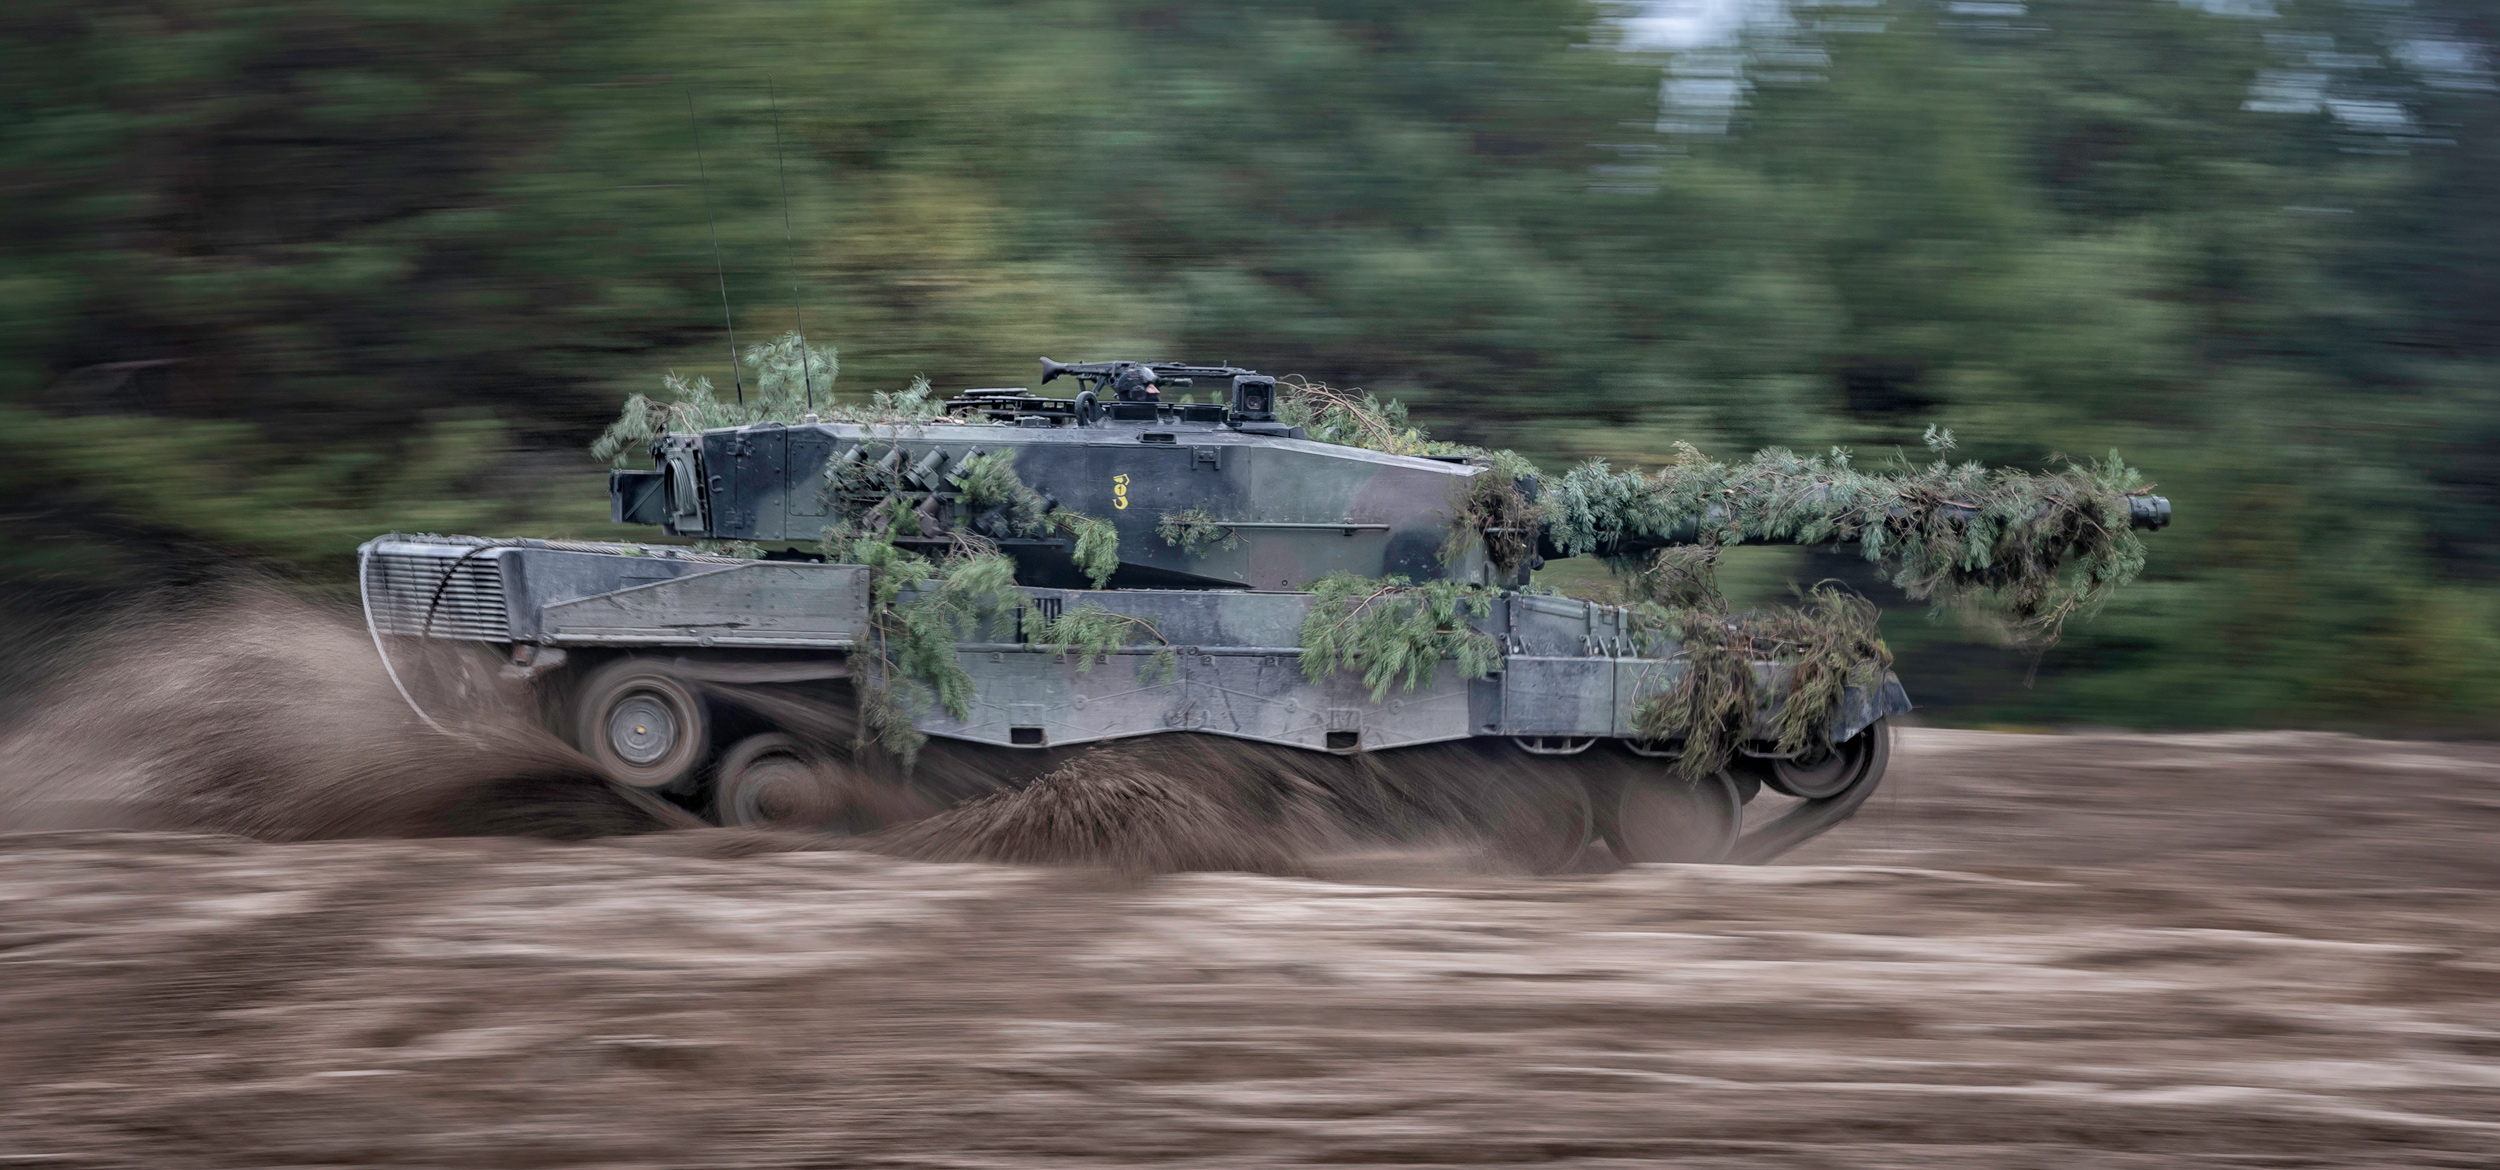 Słowacja otrzymuje pierwszy niemiecki czołg Leopard 2A4, który zastąpi BMP-1 przekazane Ukrainie